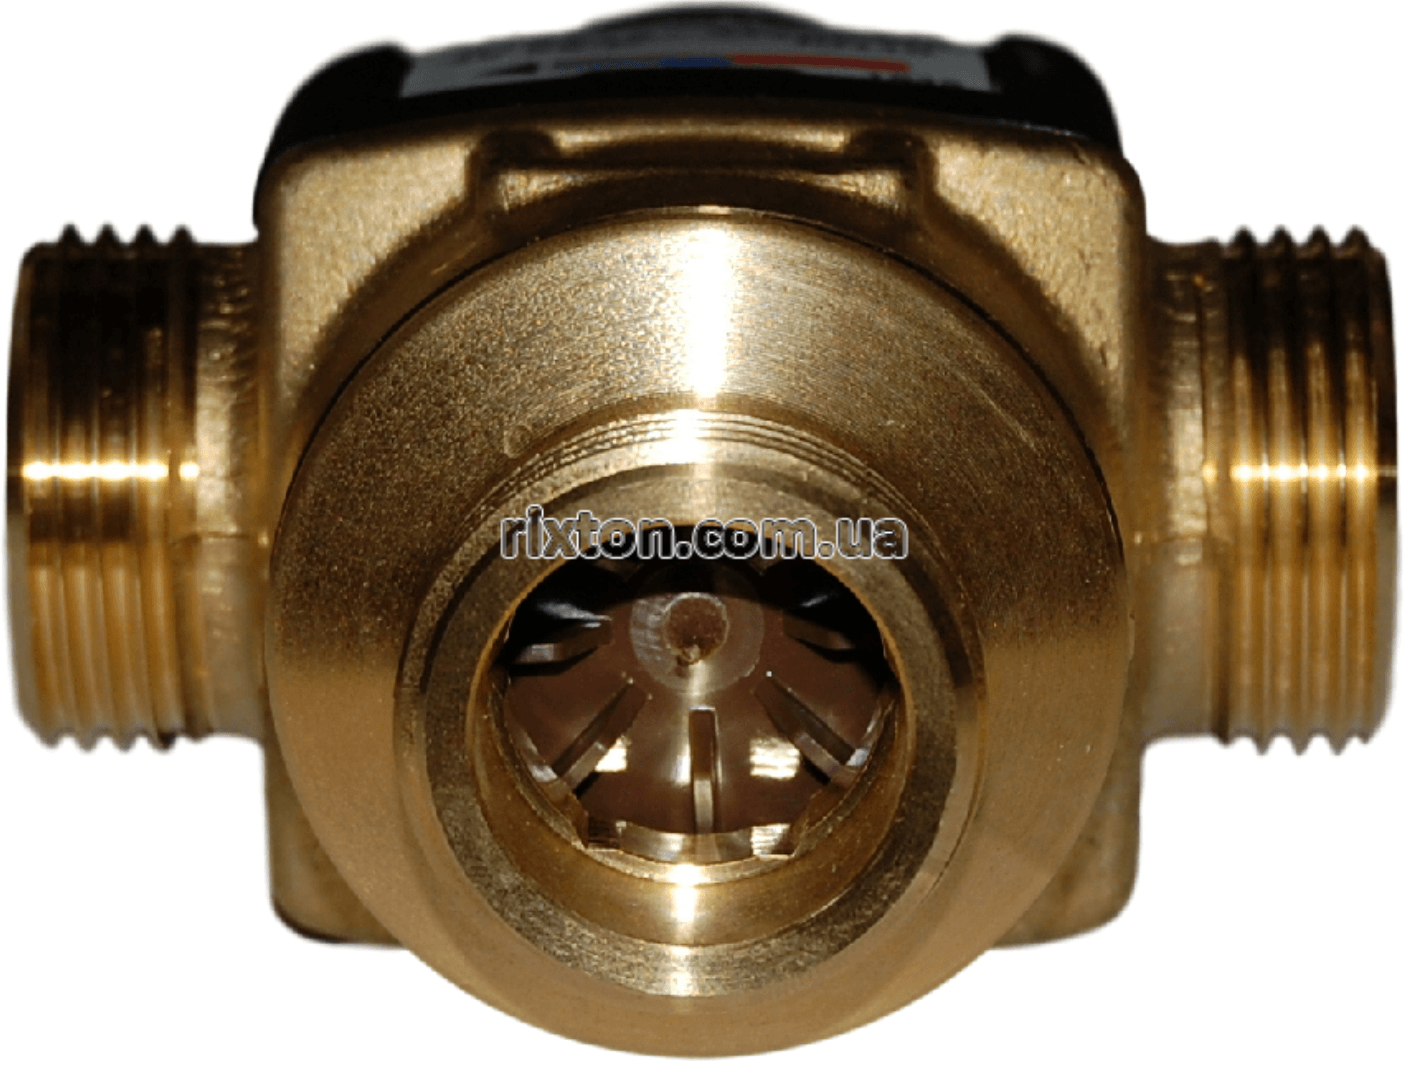 Триходовий змішувальний клапан Esbe VTA 572 30-70°C DN25 1 1/4